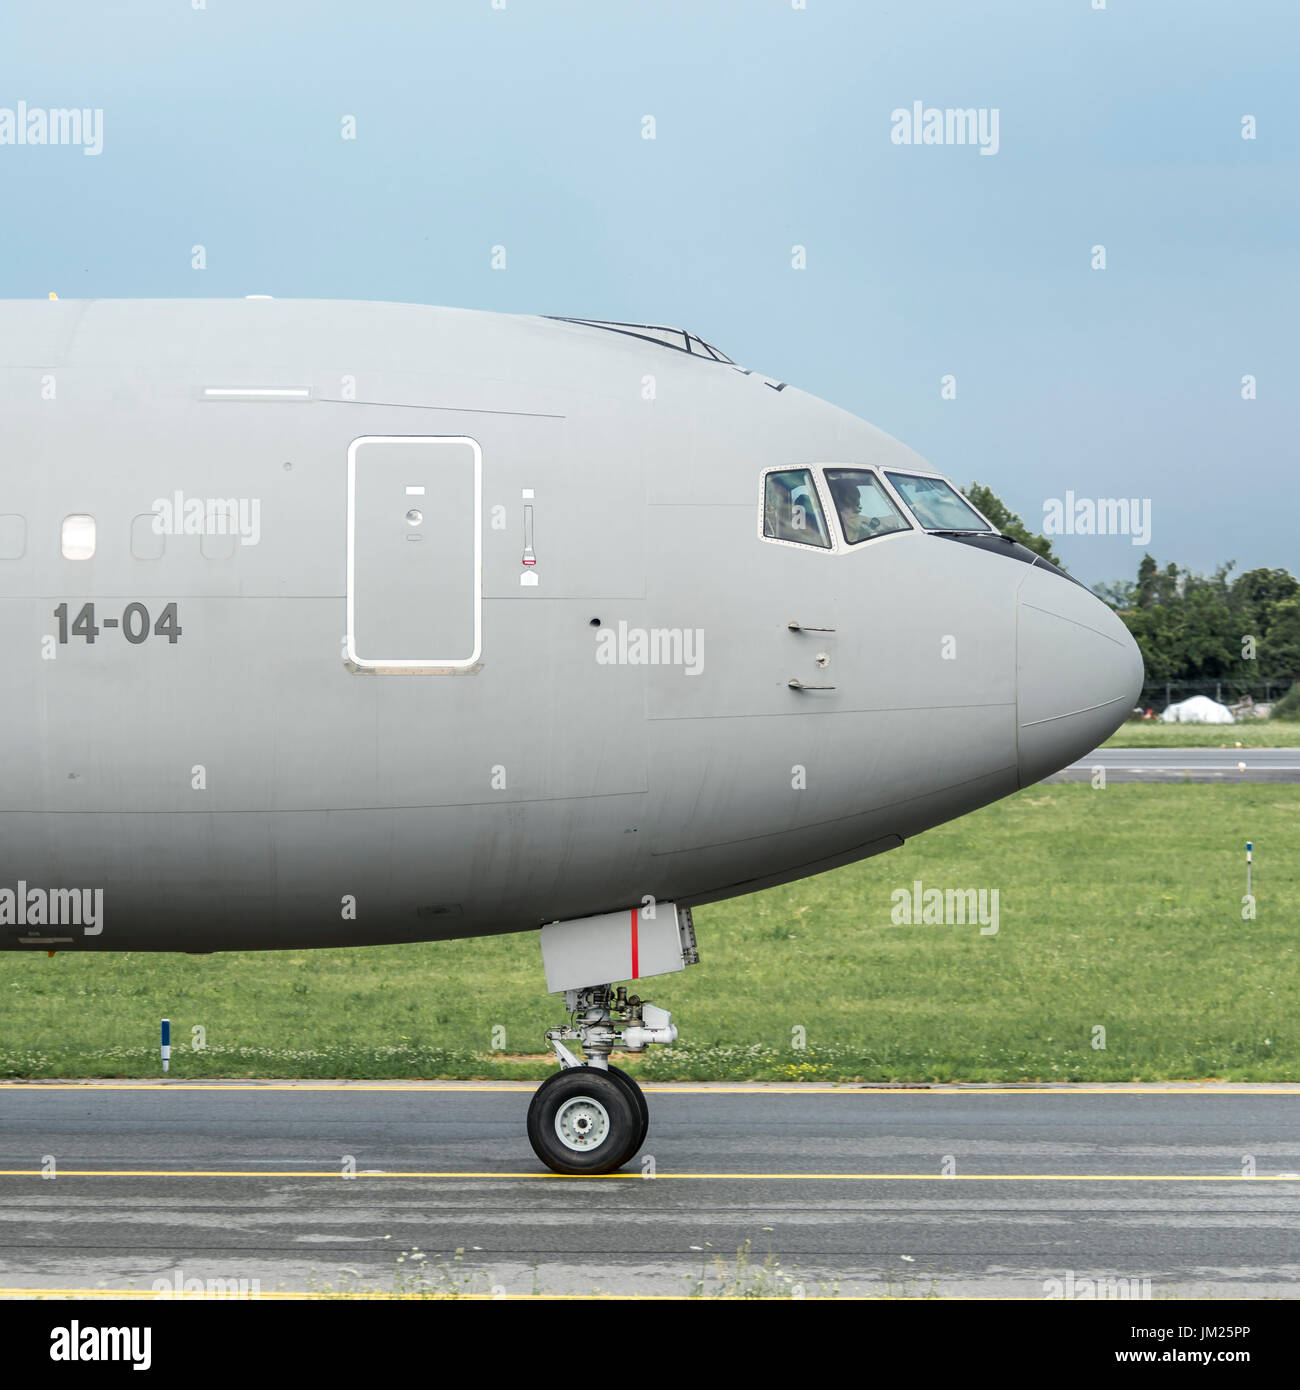 Turin Caselle Flughafen - Juli 10, 2017: Boeing KC767 ein Aeronautica Militare mm 62229, der italienischen Luftwaffe, Land in Turin Soldaten zu nehmen. Auf der Vereinigten Arabischen Emirate Zustand bringen wird. Stockfoto